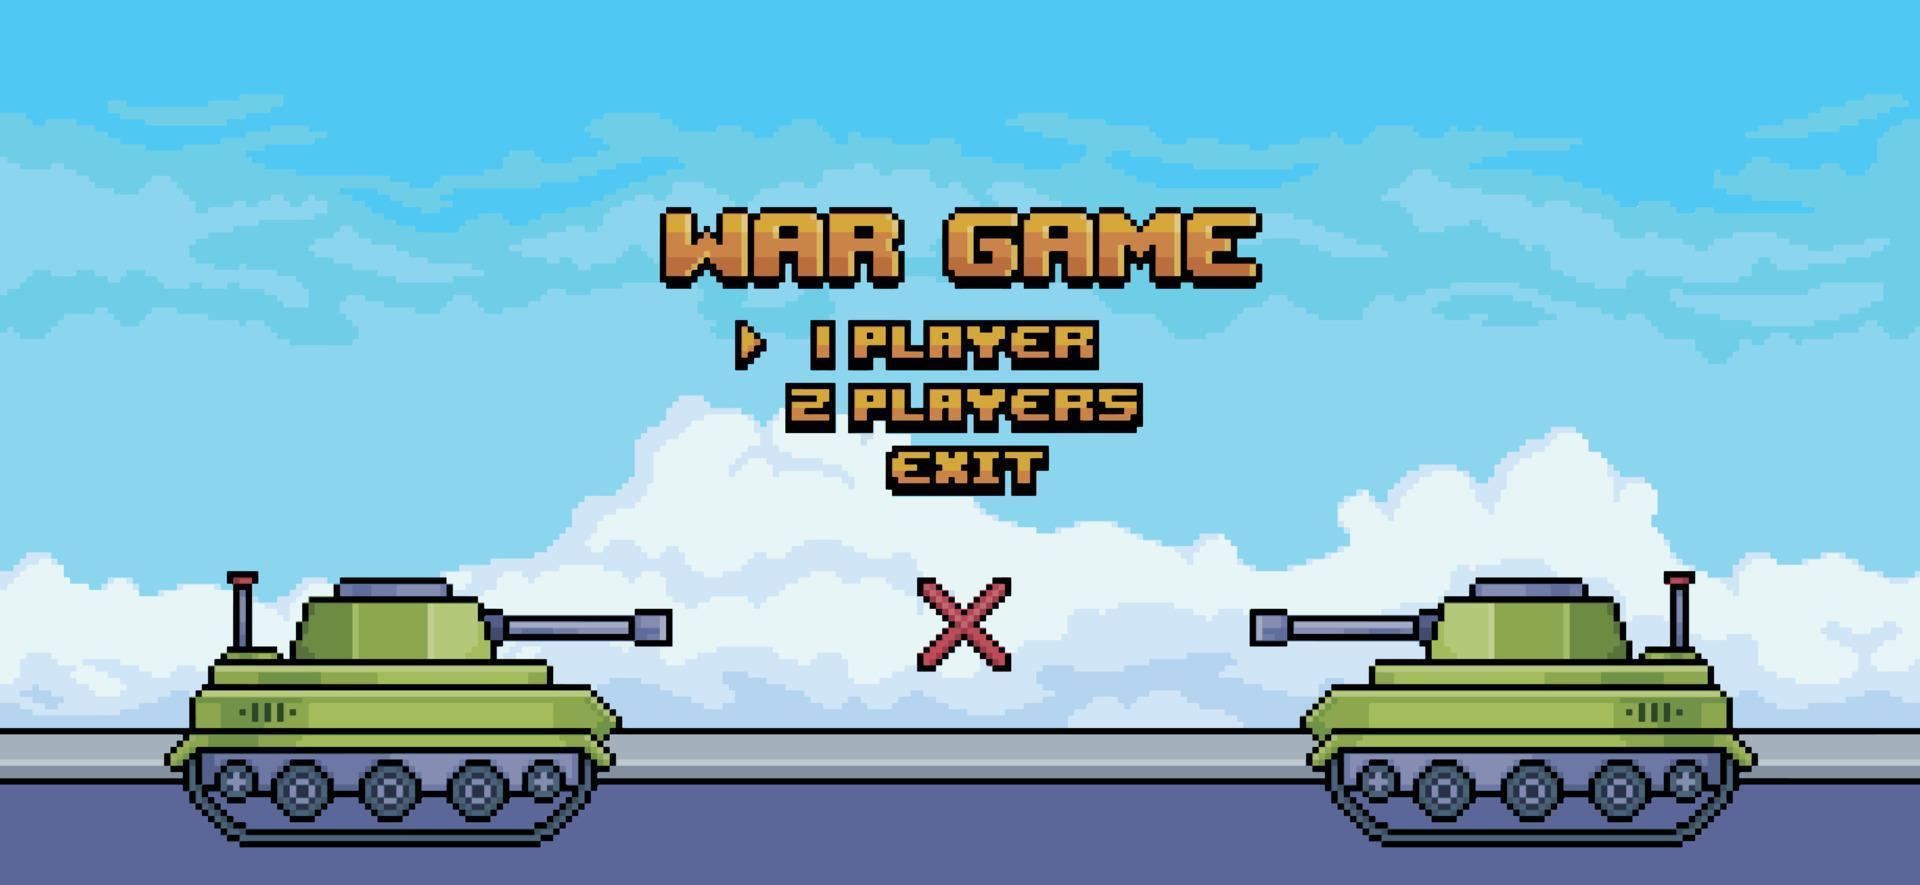 tela inicial do jogo de guerra de pixel art com tanques de guerra na rua, fundo vetorial para jogo de 8 bits vetor